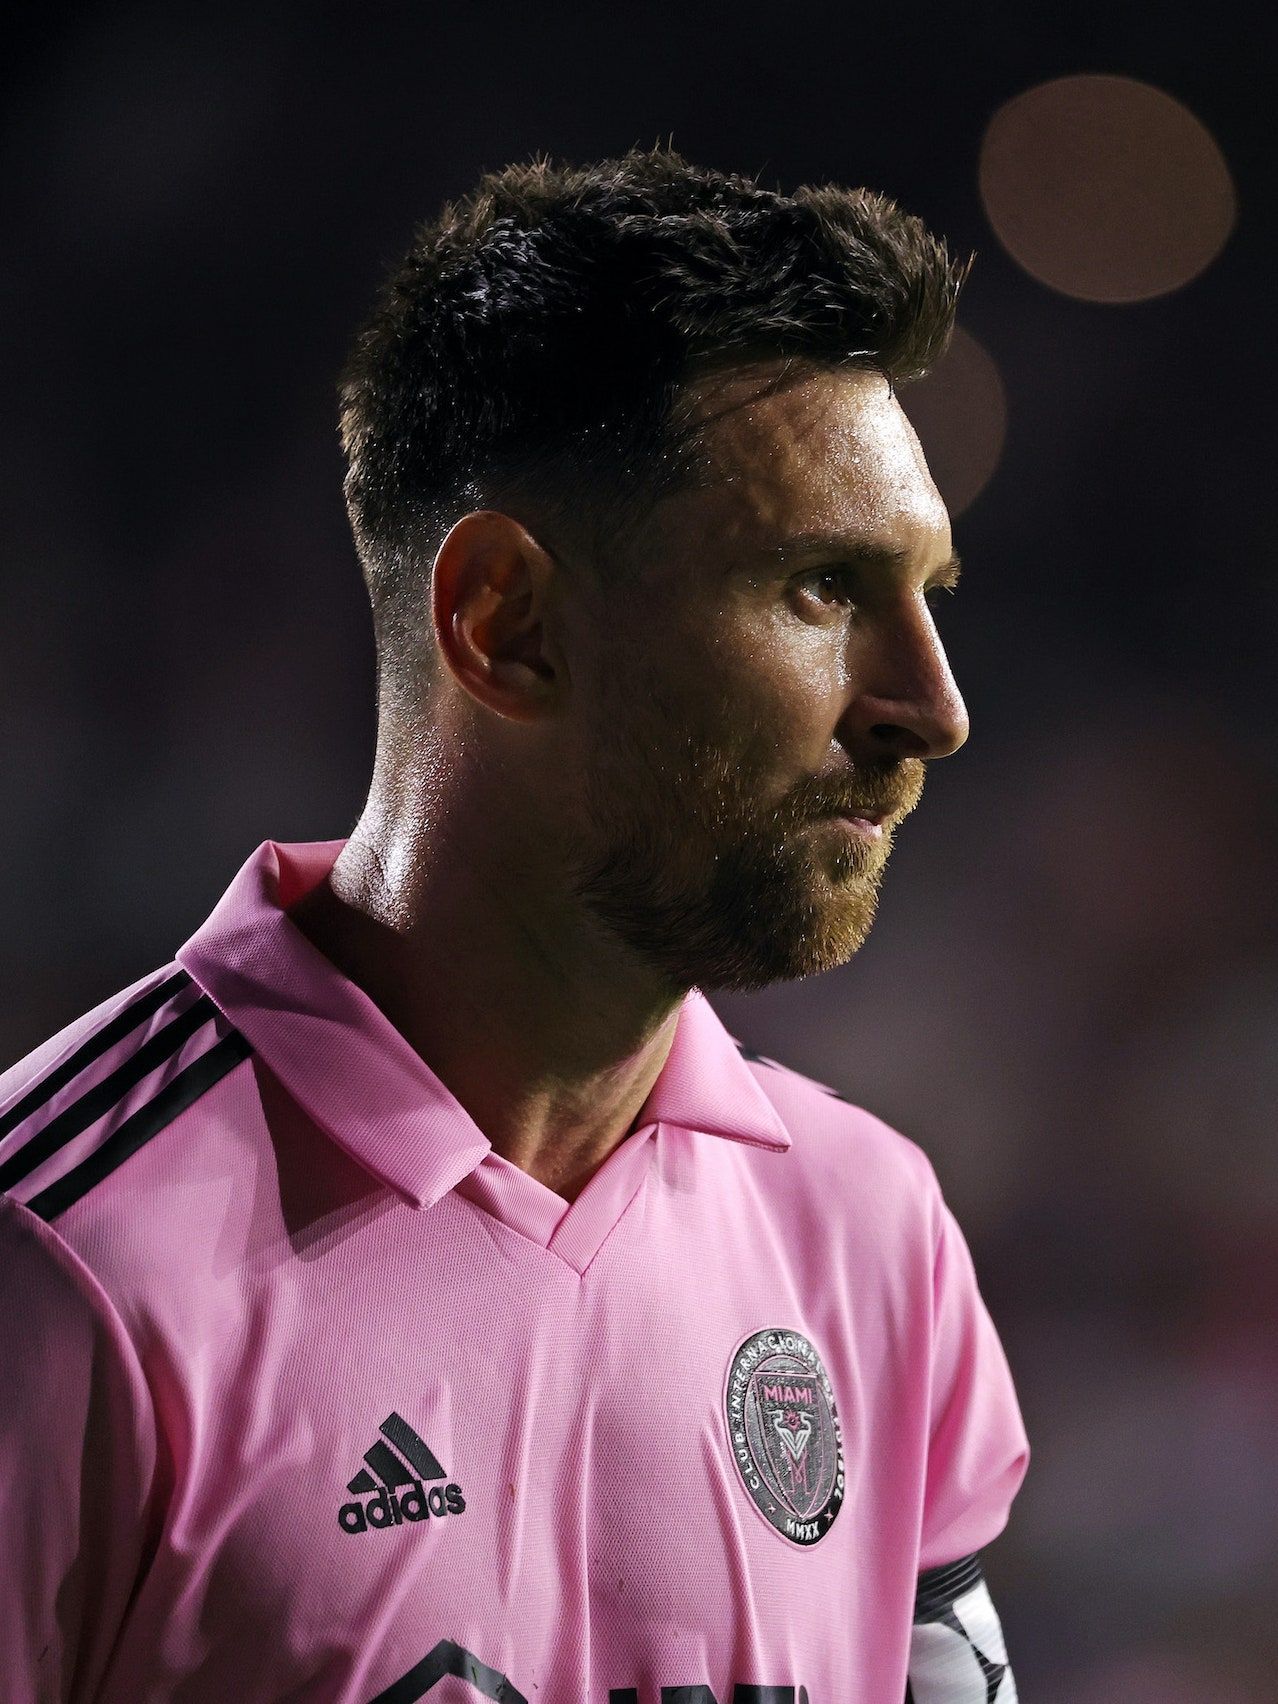 El jugador Leonel Messi muere súbitamente